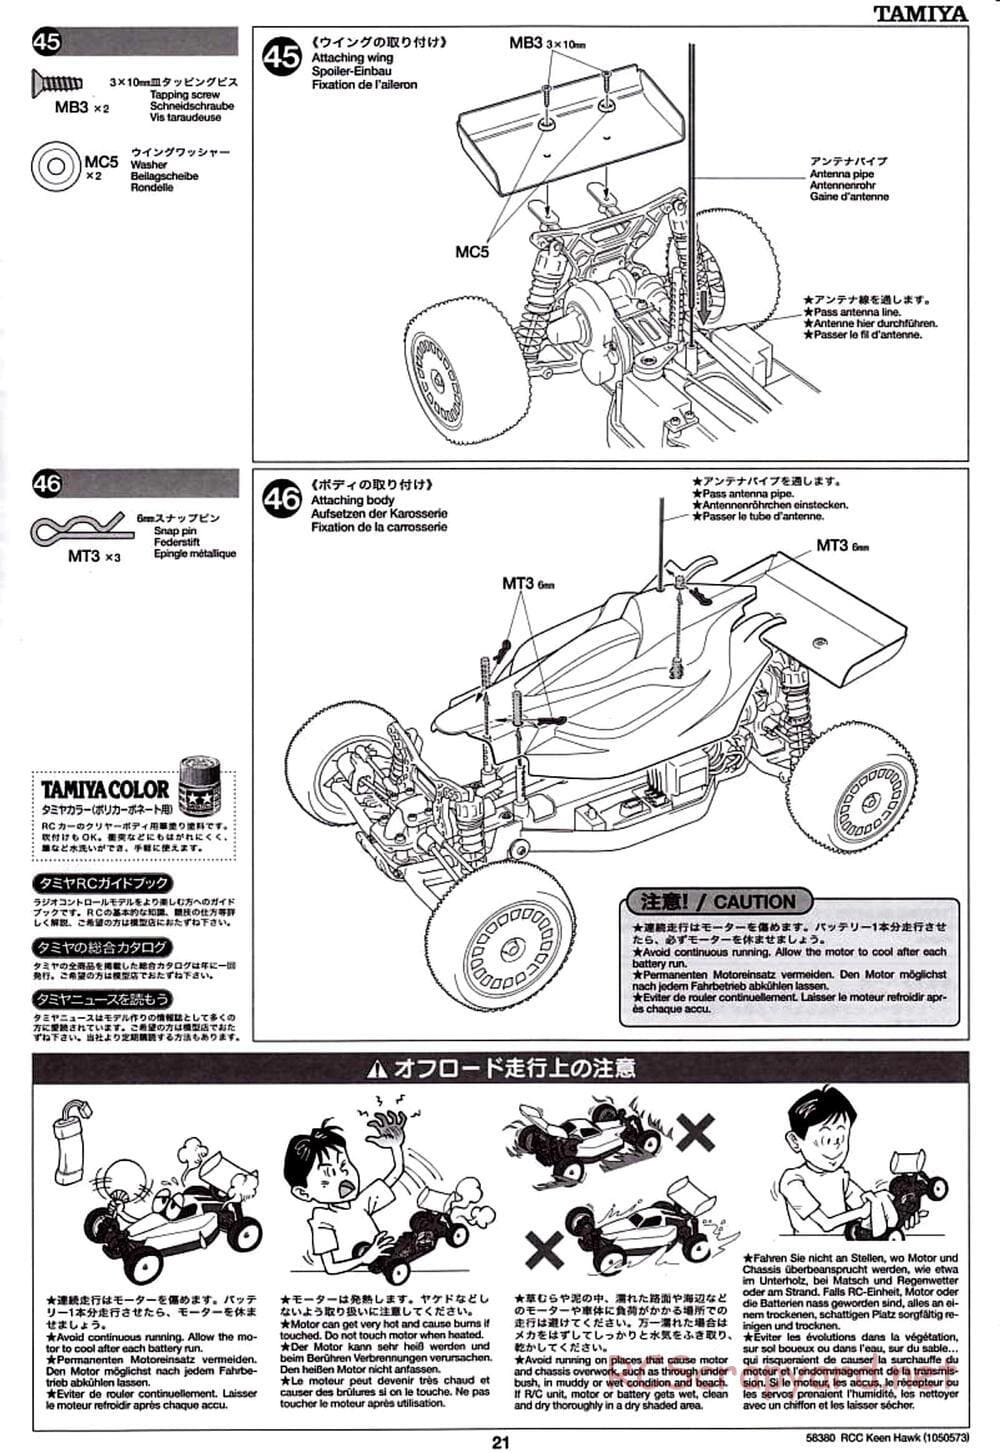 Tamiya - Keen Hawk Chassis - Manual - Page 21